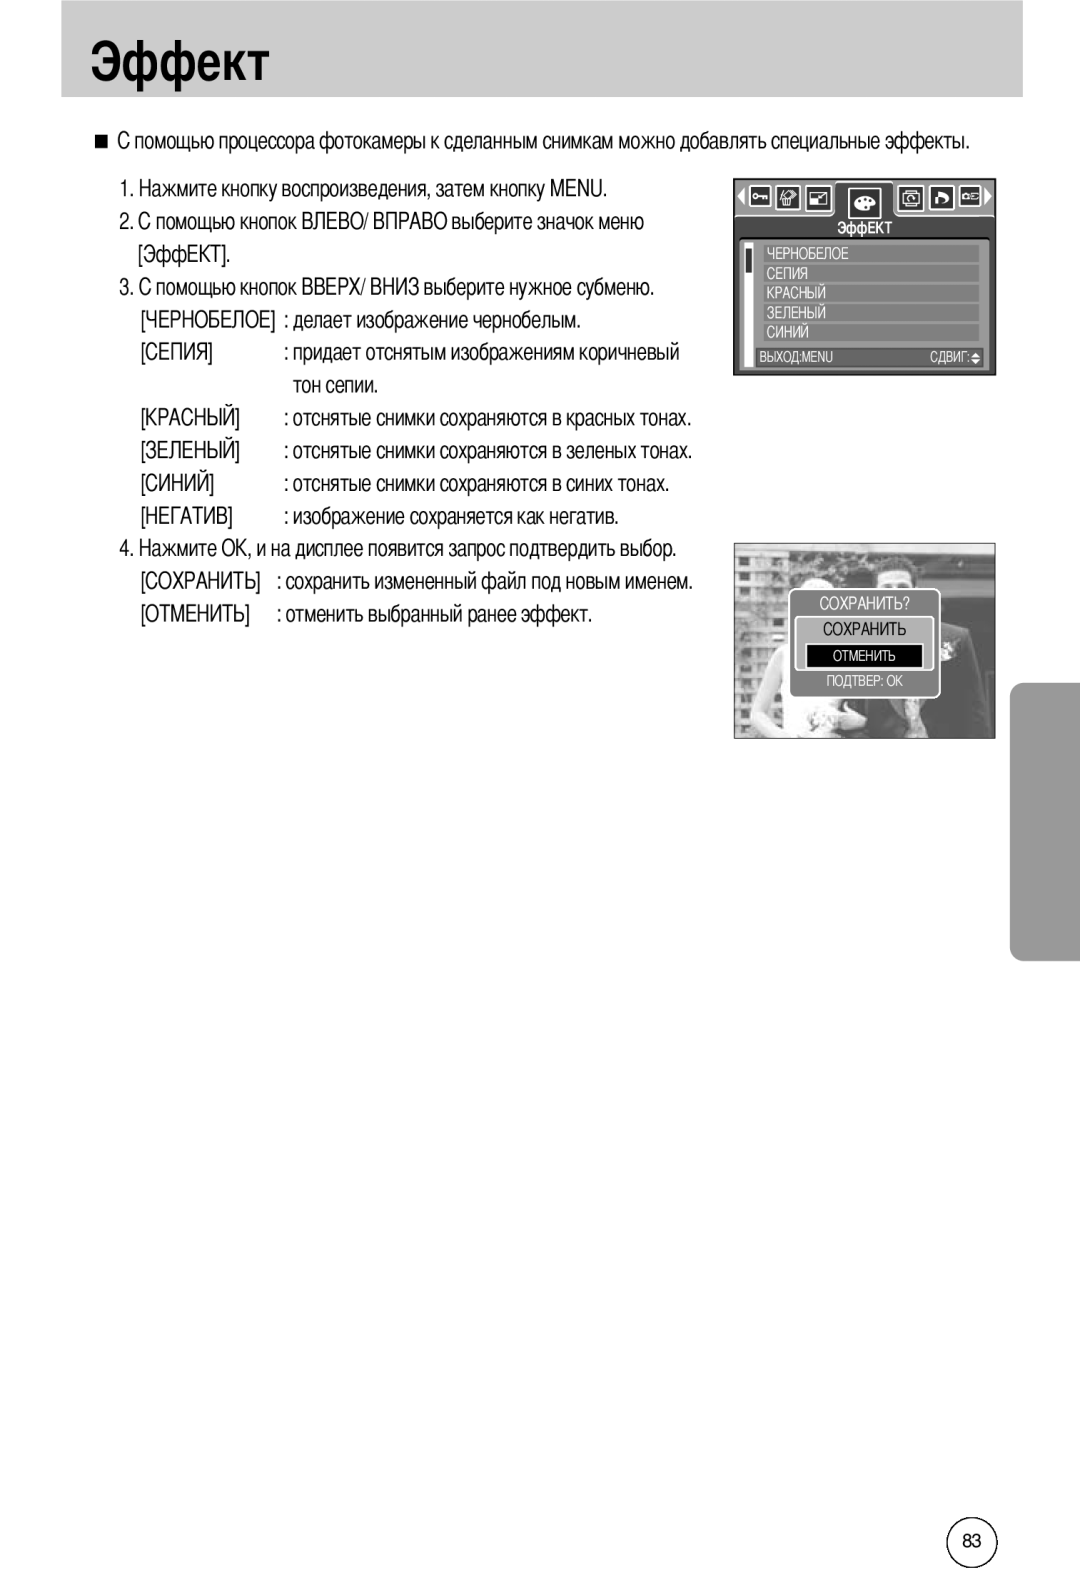 Samsung EC-I50ZZSBA/SP manual ЭффEKT, делает изображение чернобелым, сохранить измененный файл под новым именем, Эффект 